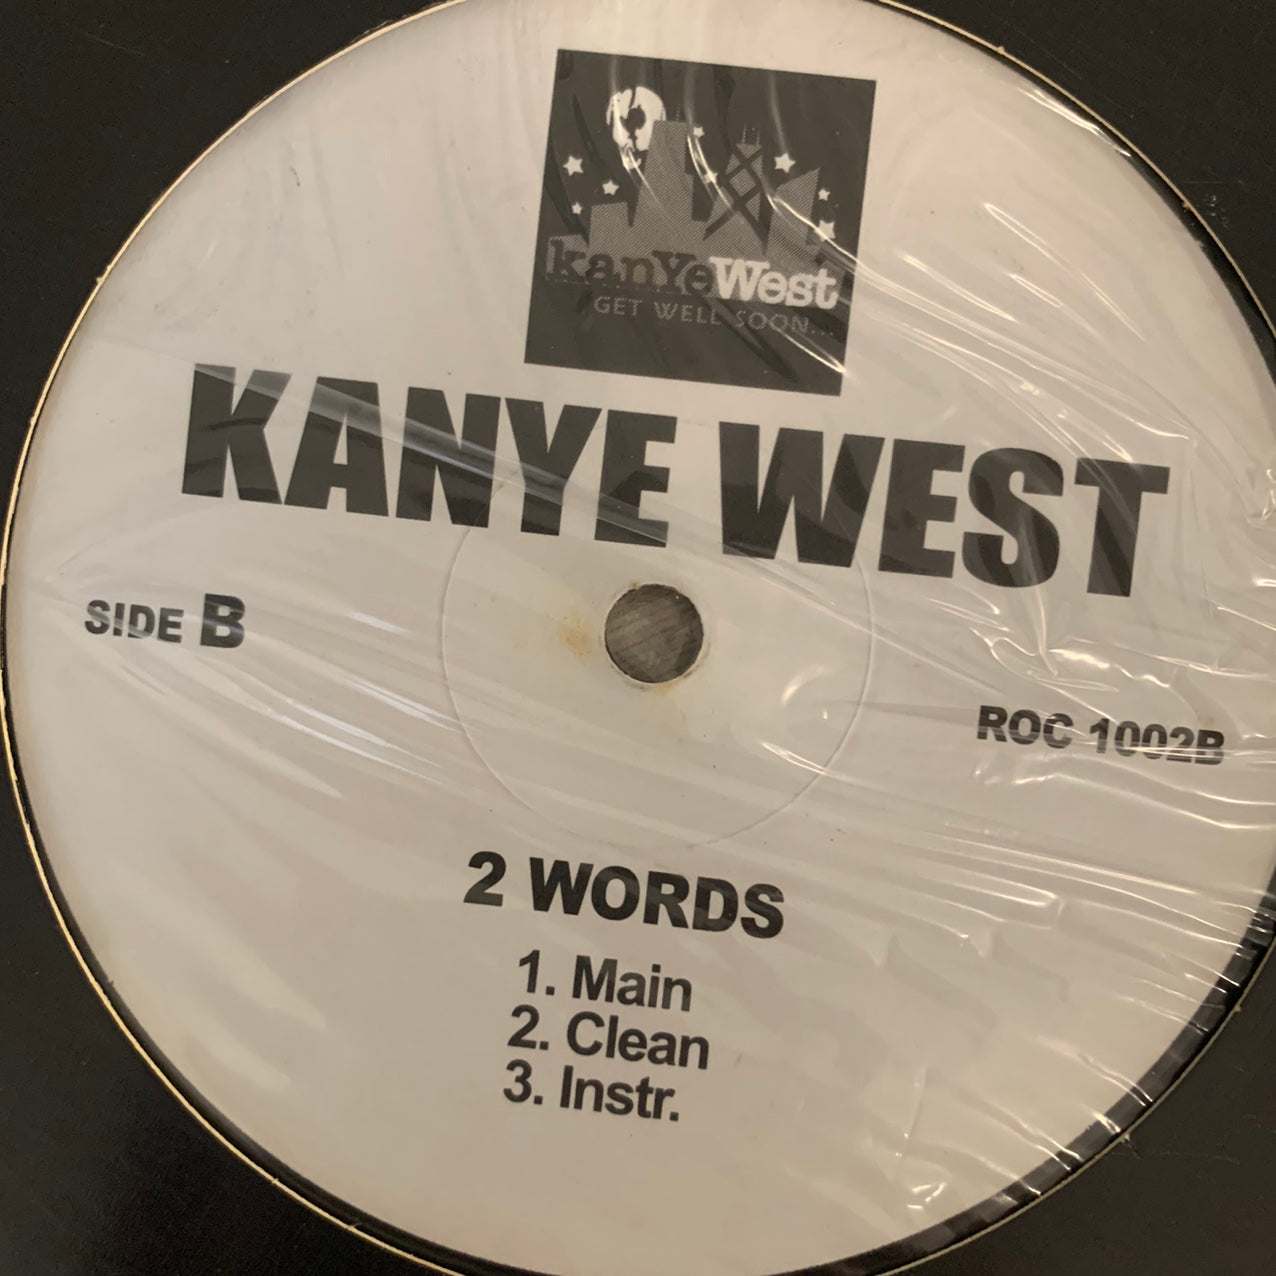 Through the Wire (Tradução em Português) – Kanye West